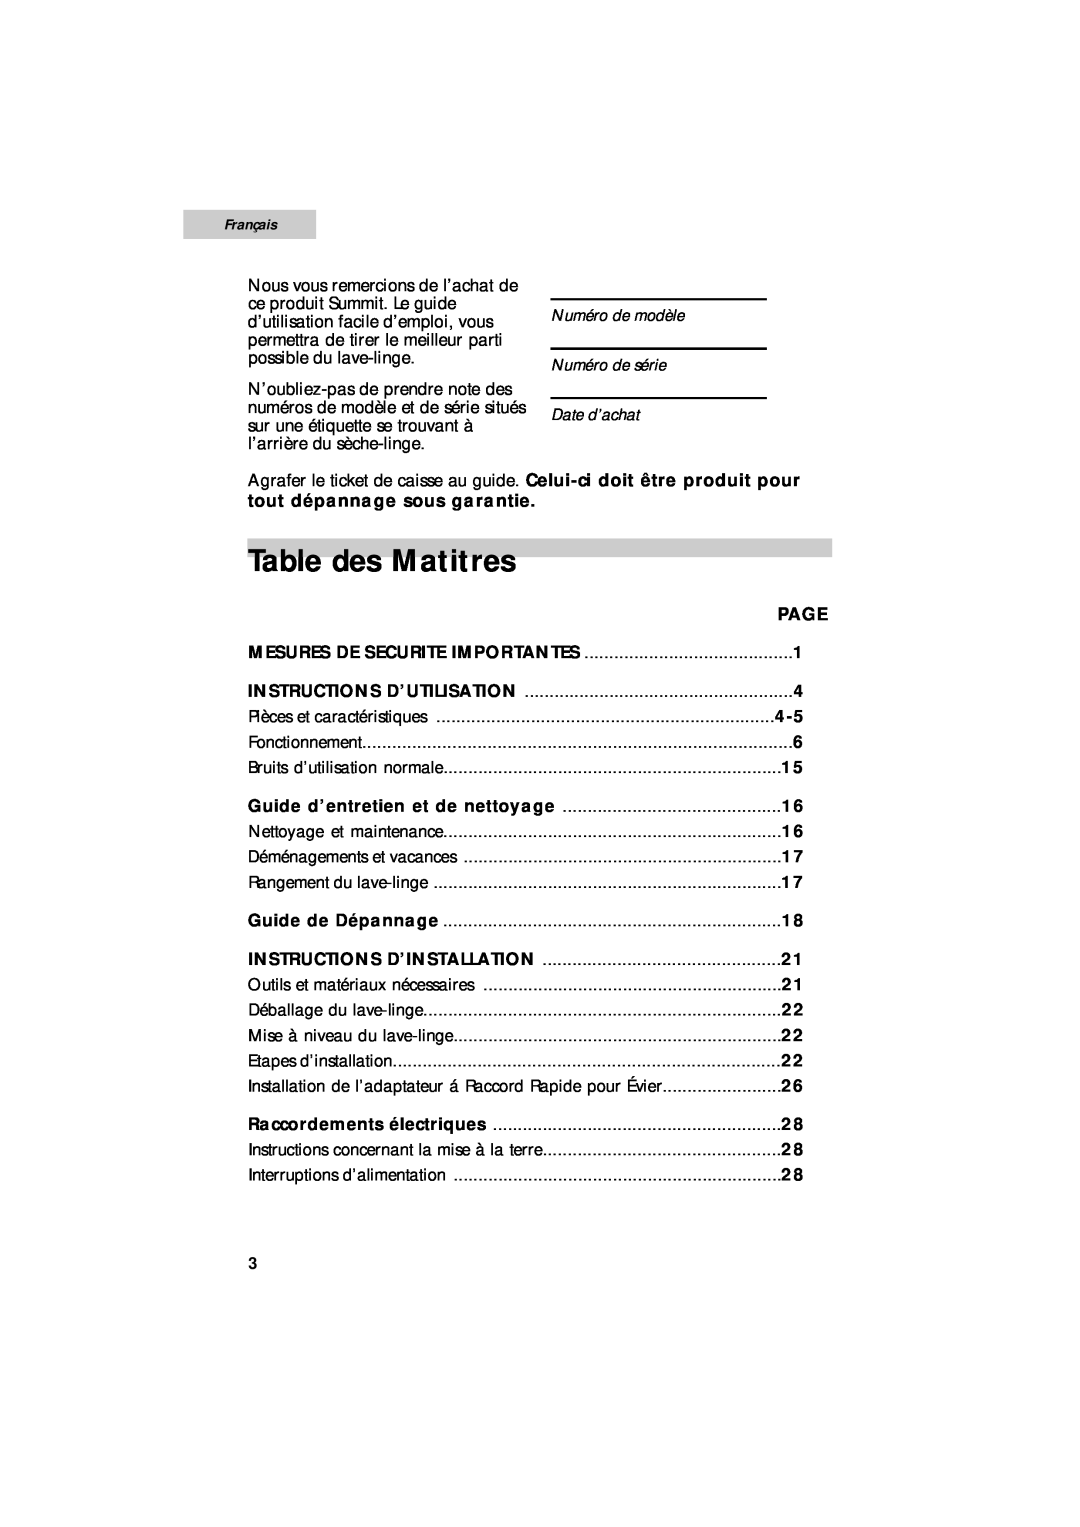 Summit SPW1200P user manual Table des Matitres, tout dépannage sous garantie, Page, Français 